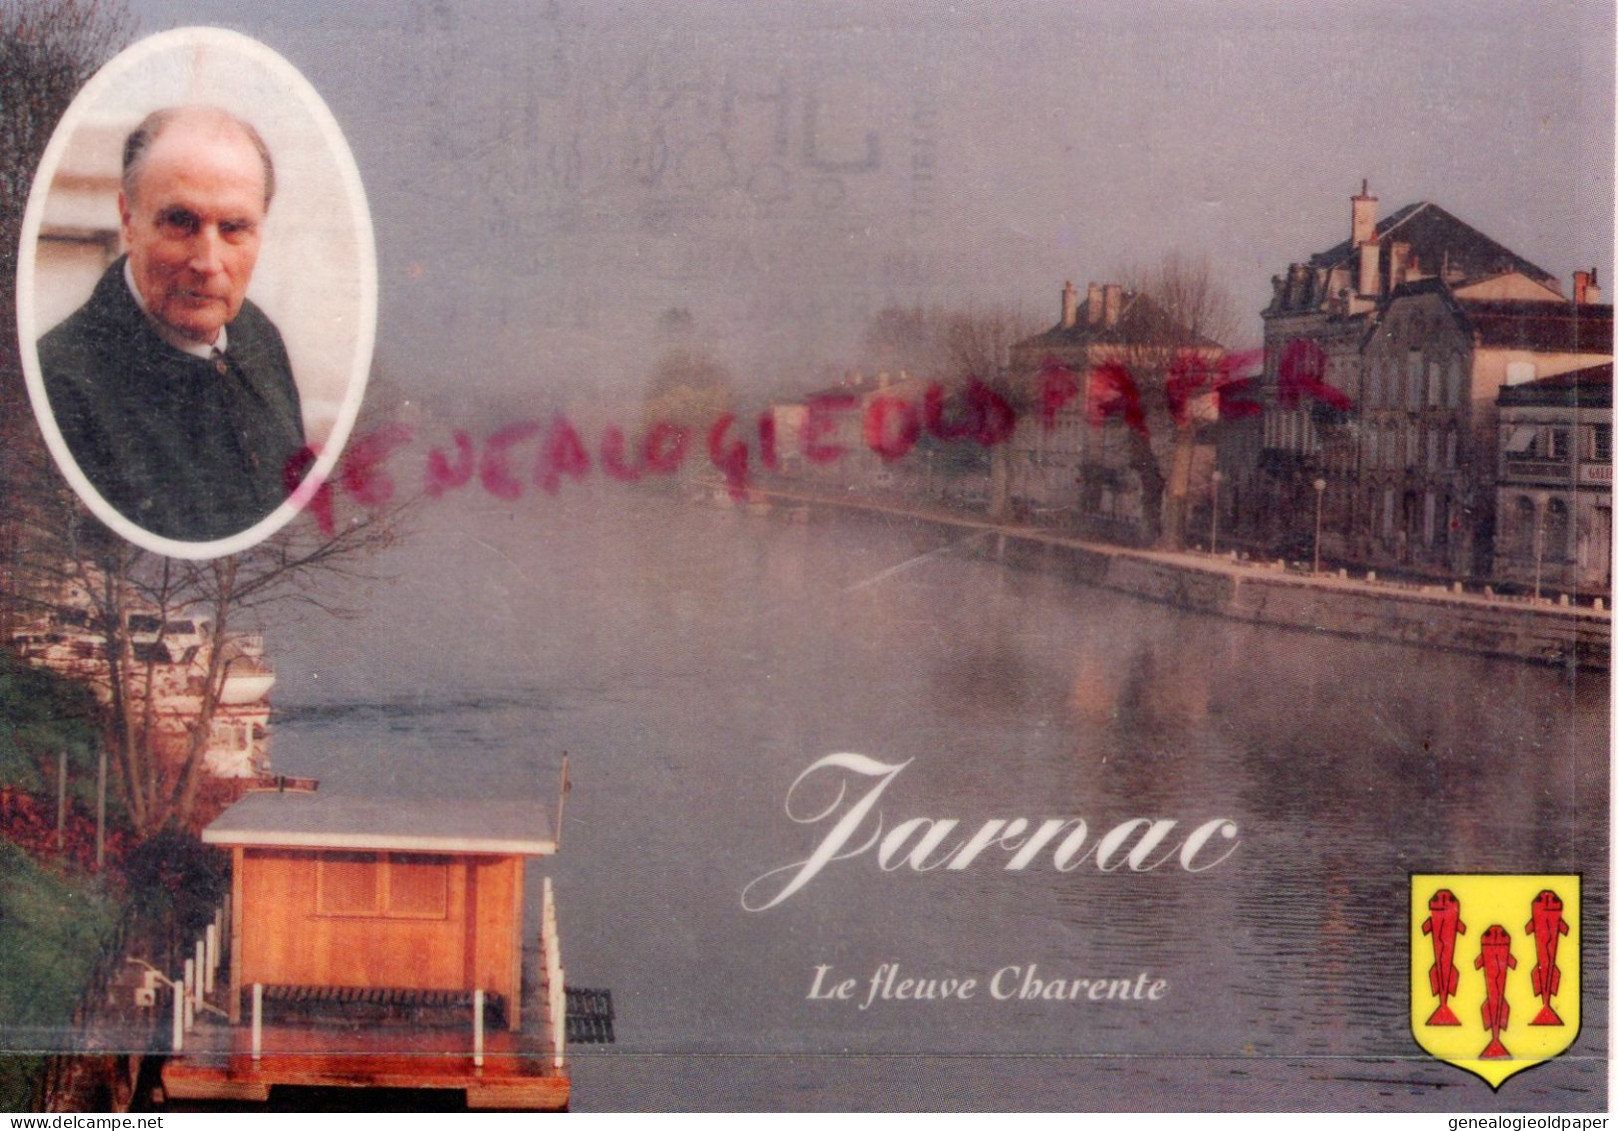 16- JARNAC - LE FLEUVE CHARENTE  QUAI DE L' ORANGERIE  F. MITTERRAND PORTRAIT - Jarnac